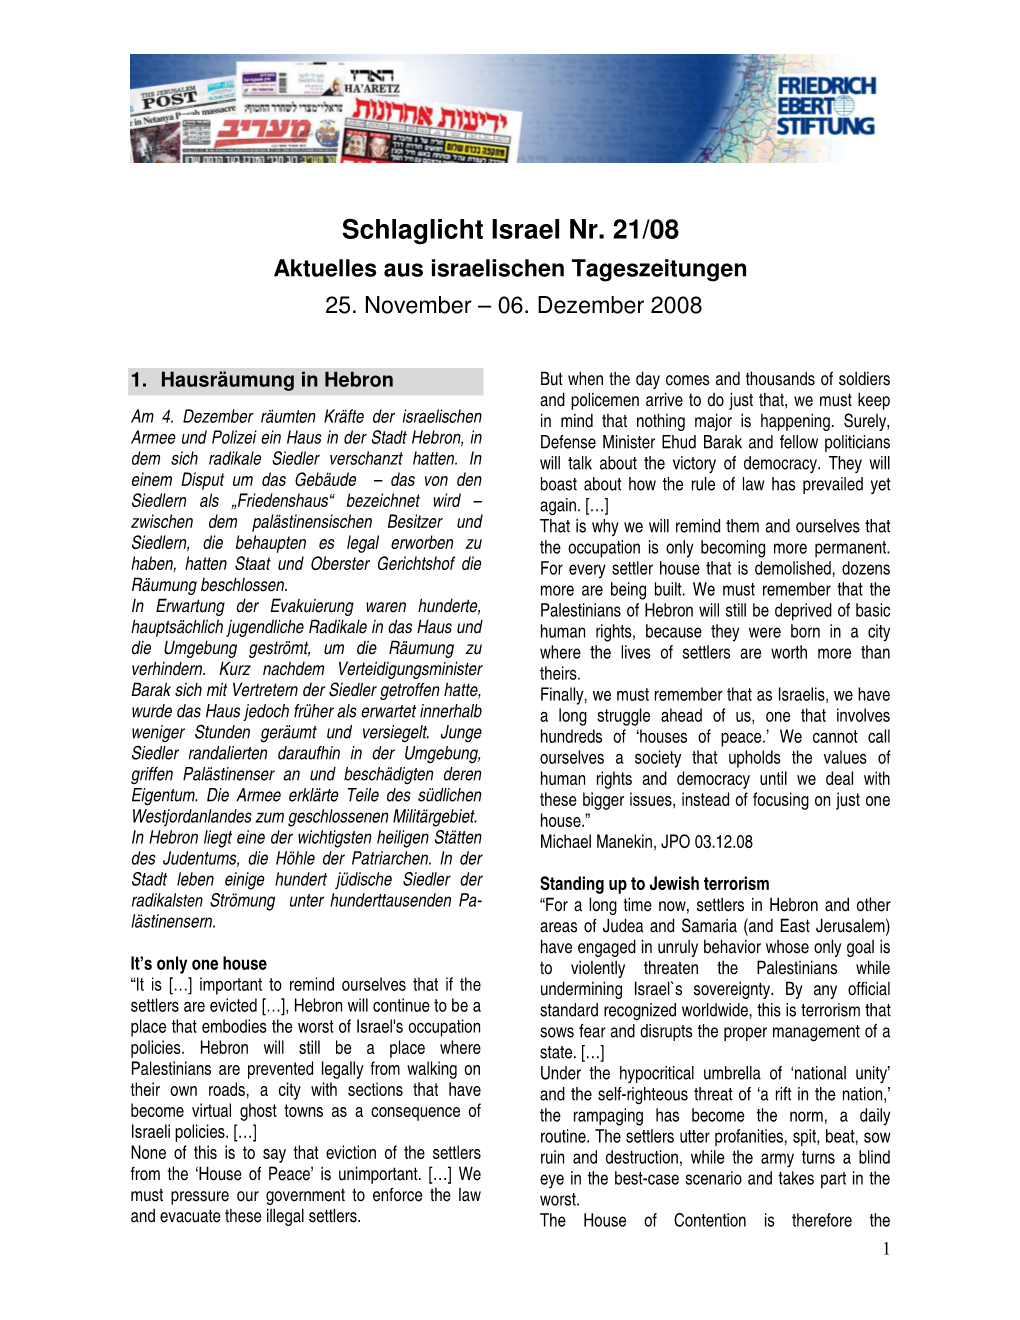 Schlaglicht Israel Nr. 21/08 Aktuelles Aus Israelischen Tageszeitungen 25